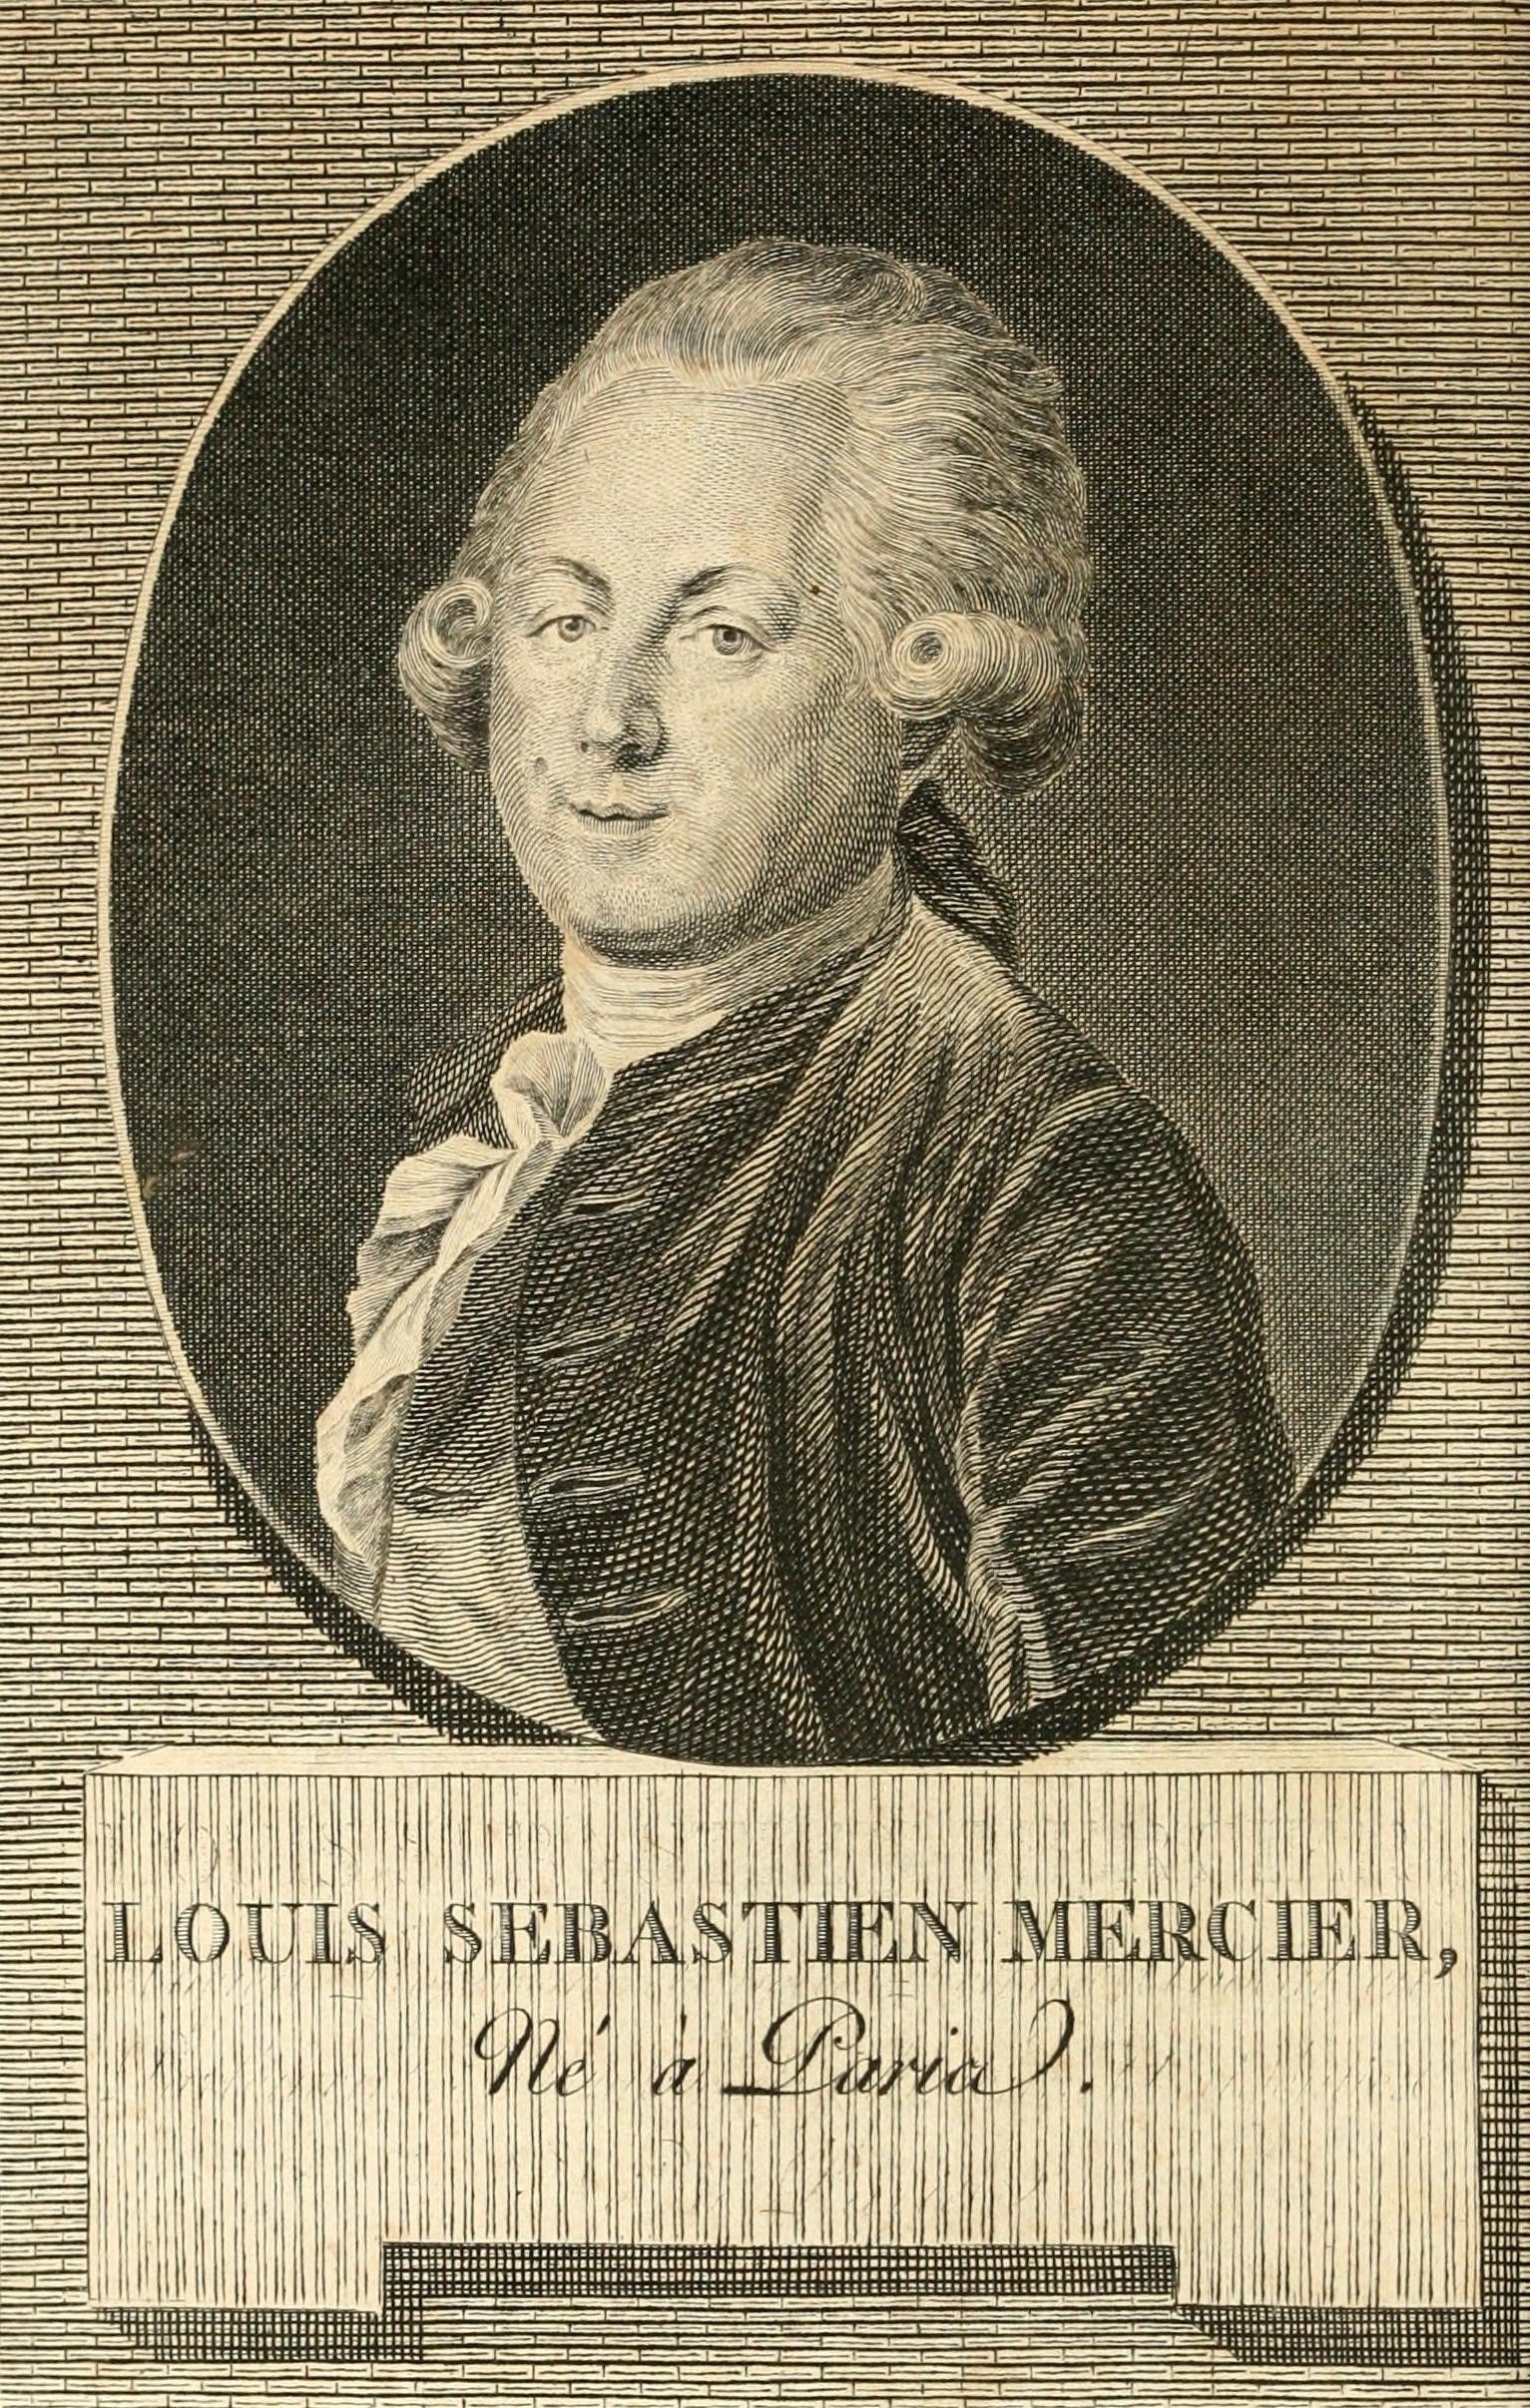 Portrait of Louis-Sébastien Mercier by Benoît-Louis Henriquez. (Image: Wikimedia Commons)